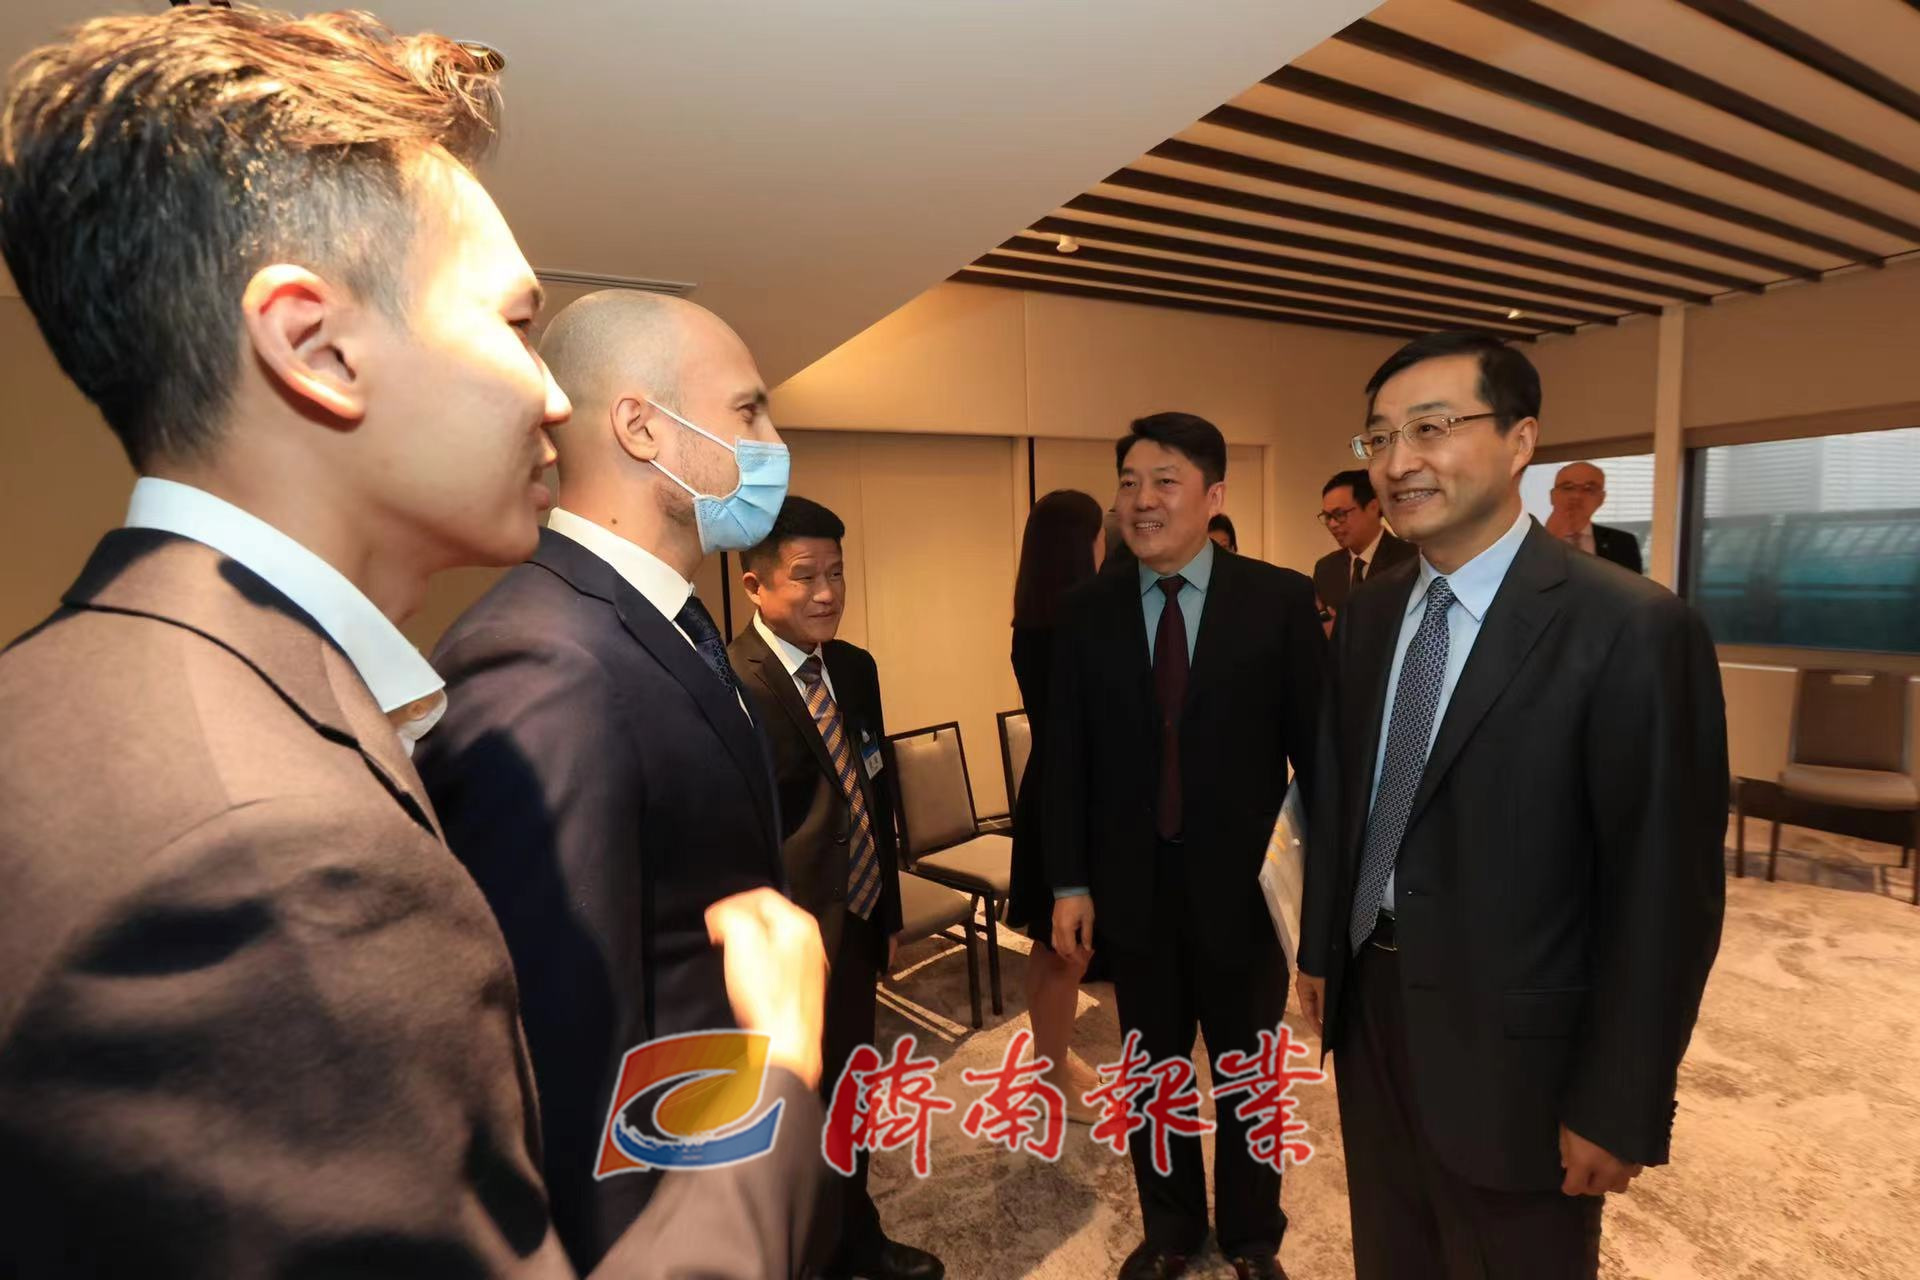 刘强率济南市代表团赴新加坡访问 深化对新合作 密切友好往来